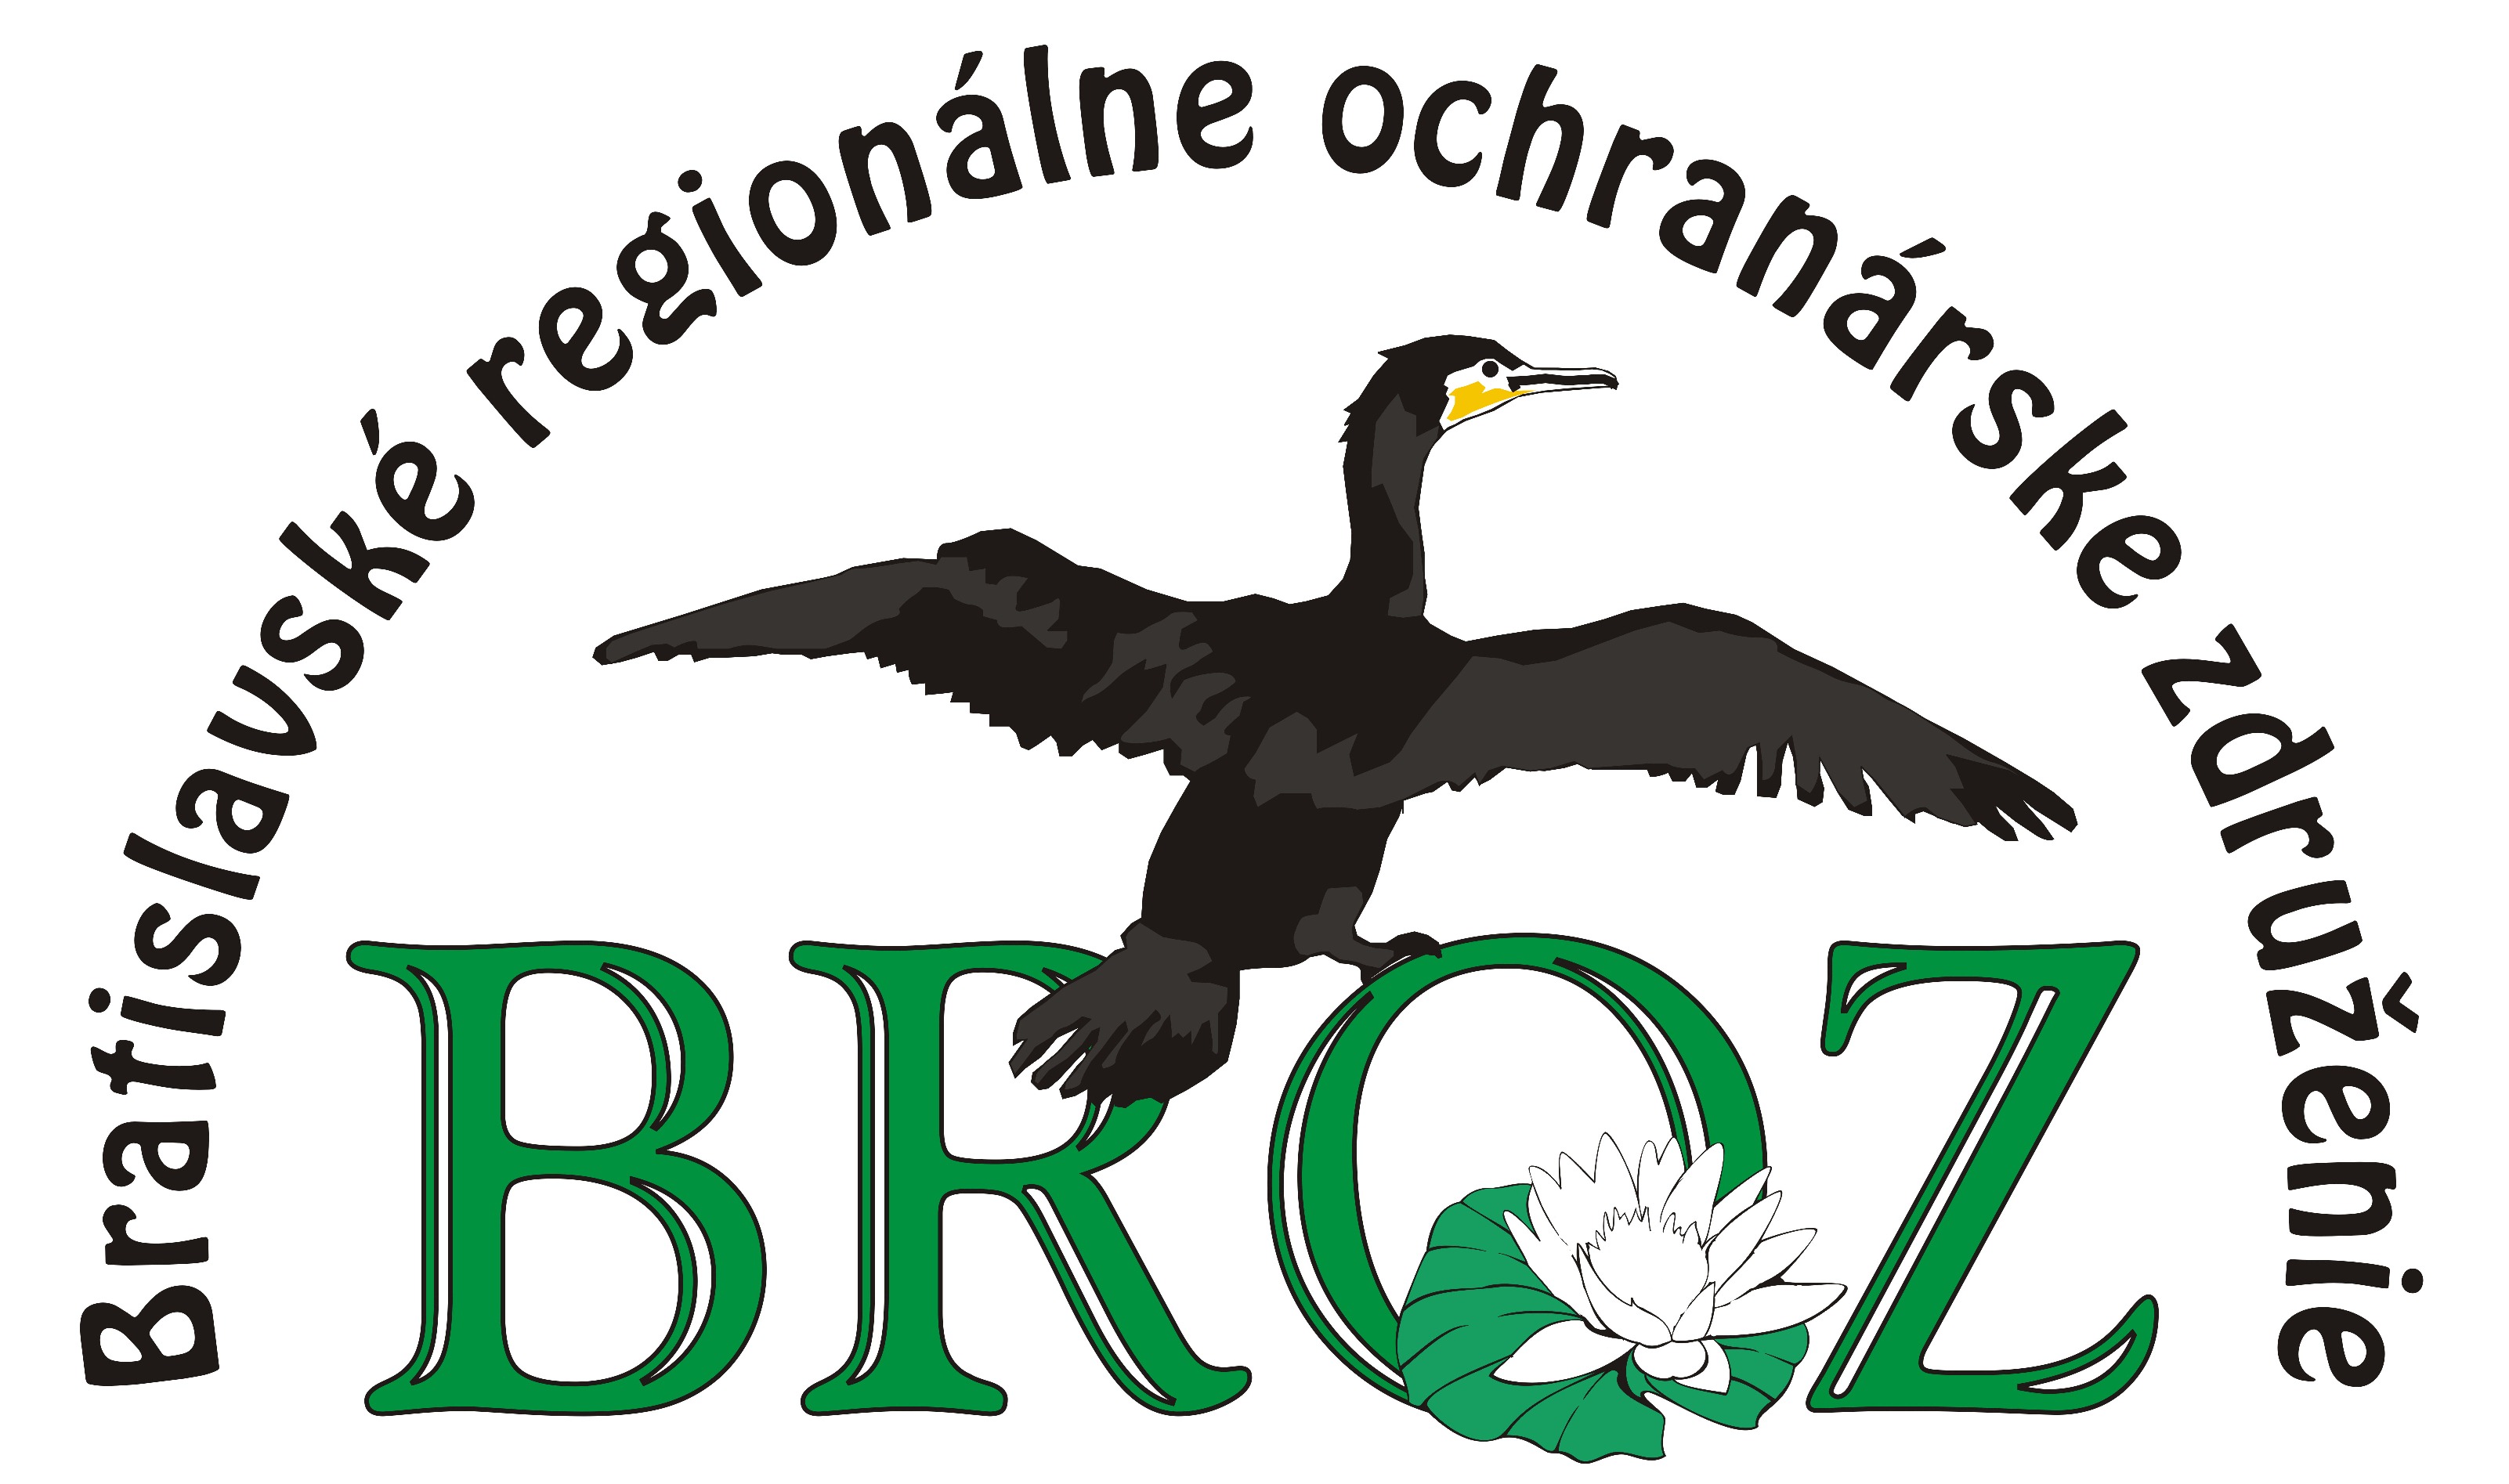 Bratislavské regionálne ochranárske združenie - BROZ